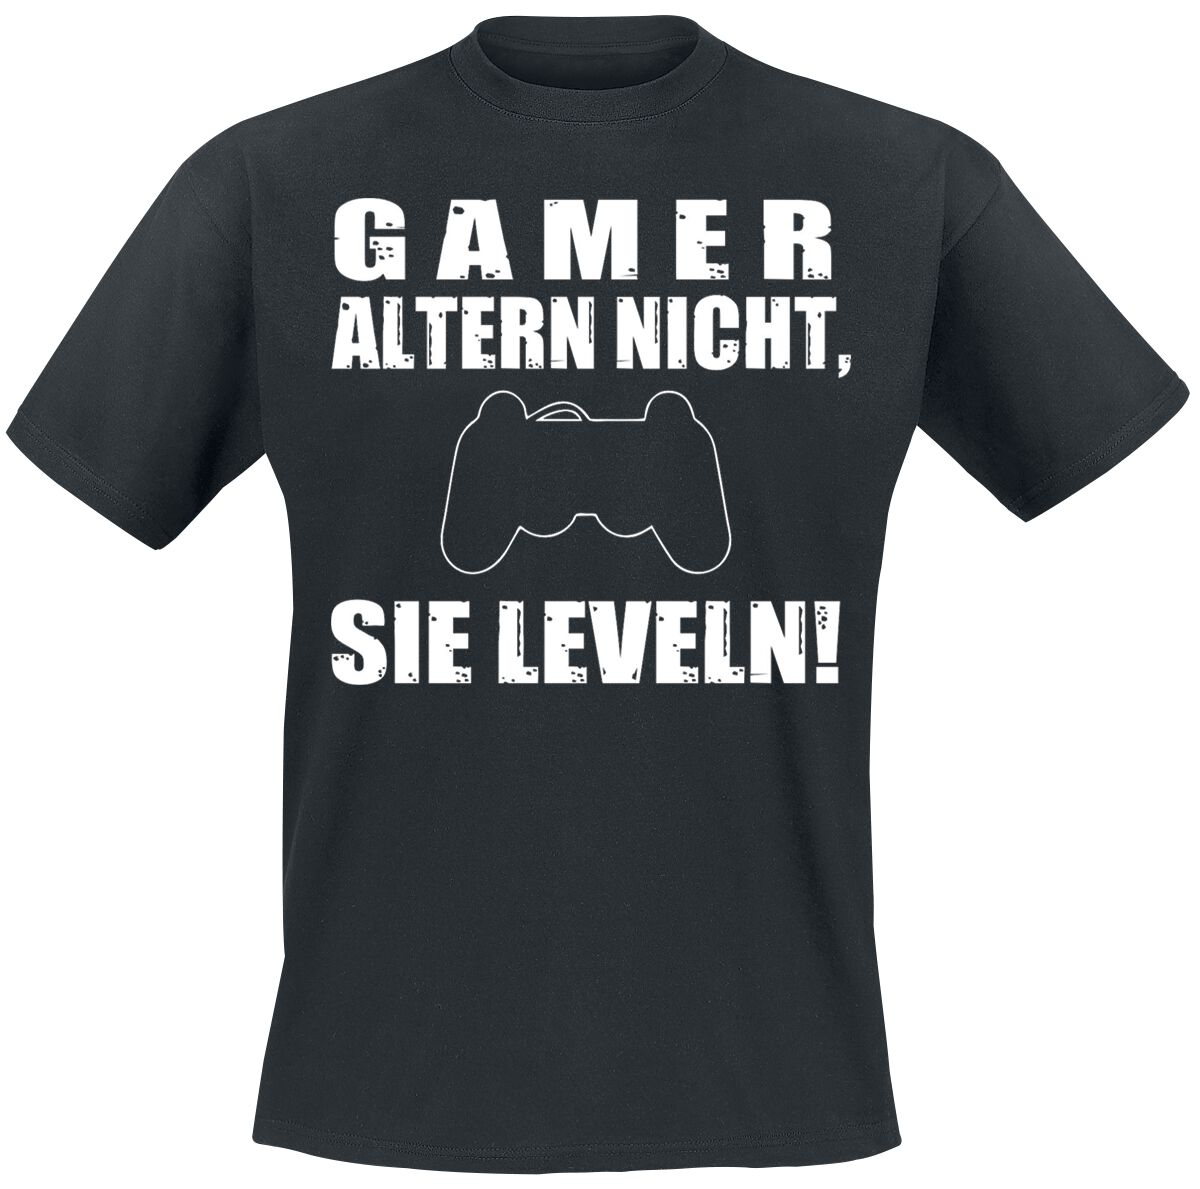 Sprüche - Gaming T-Shirt - Gamer altern nicht, sie leveln! - M bis 3XL - für Männer - Größe XXL - schwarz  - EMP exklusives Merchandise!